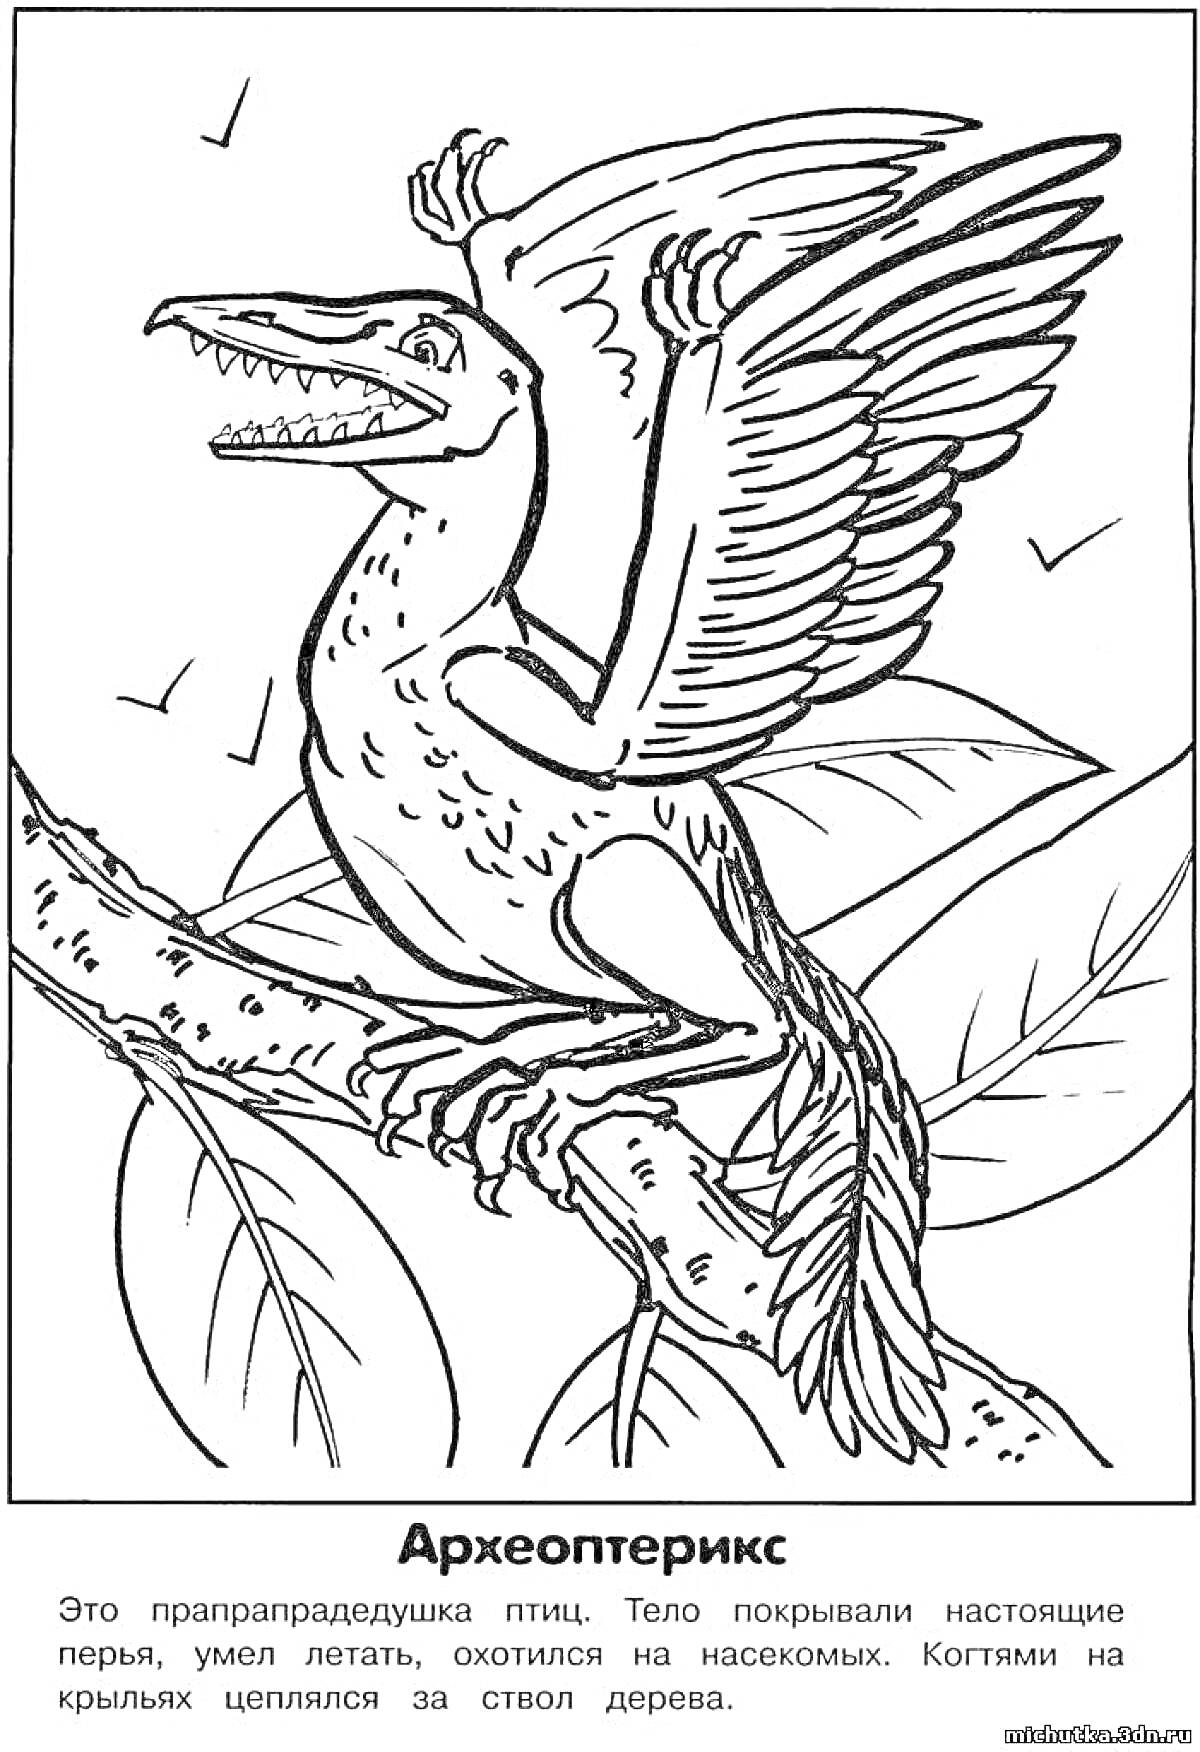 Раскраска Археоптерикс, сидящий на ветке дерева с растопыренными крыльями и открытой пастью